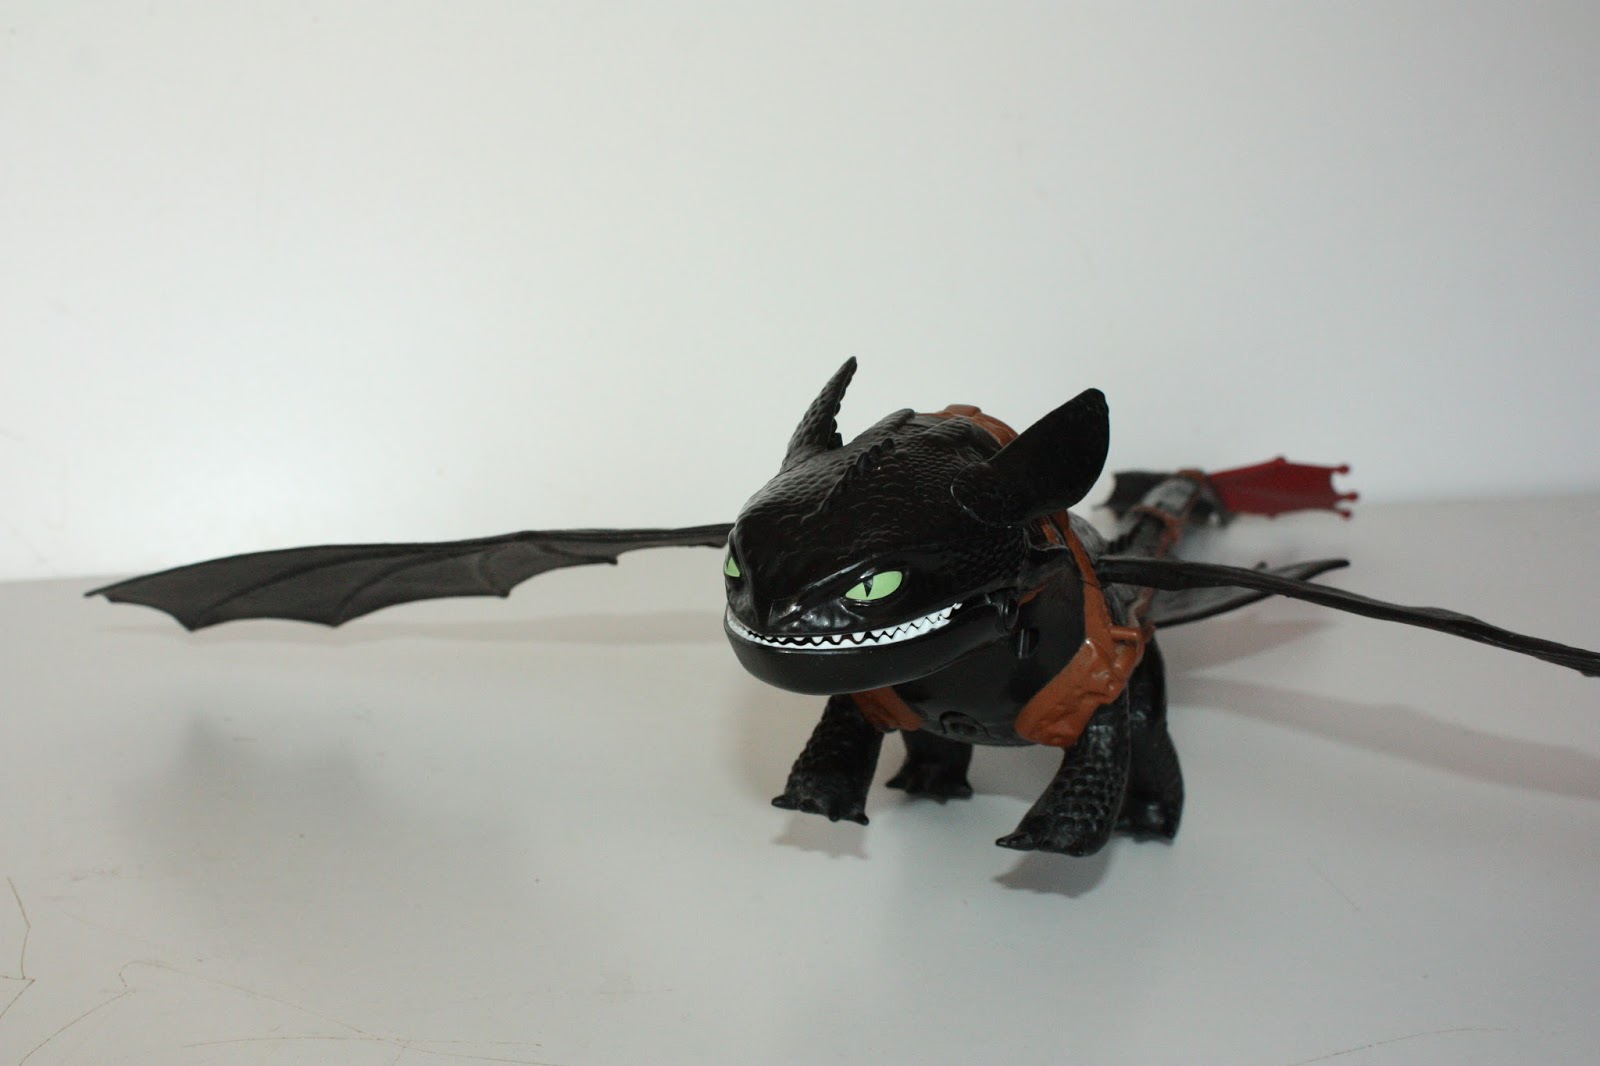 Ken S Vintage Toys Dreamworks Dragons Riders Of Berk